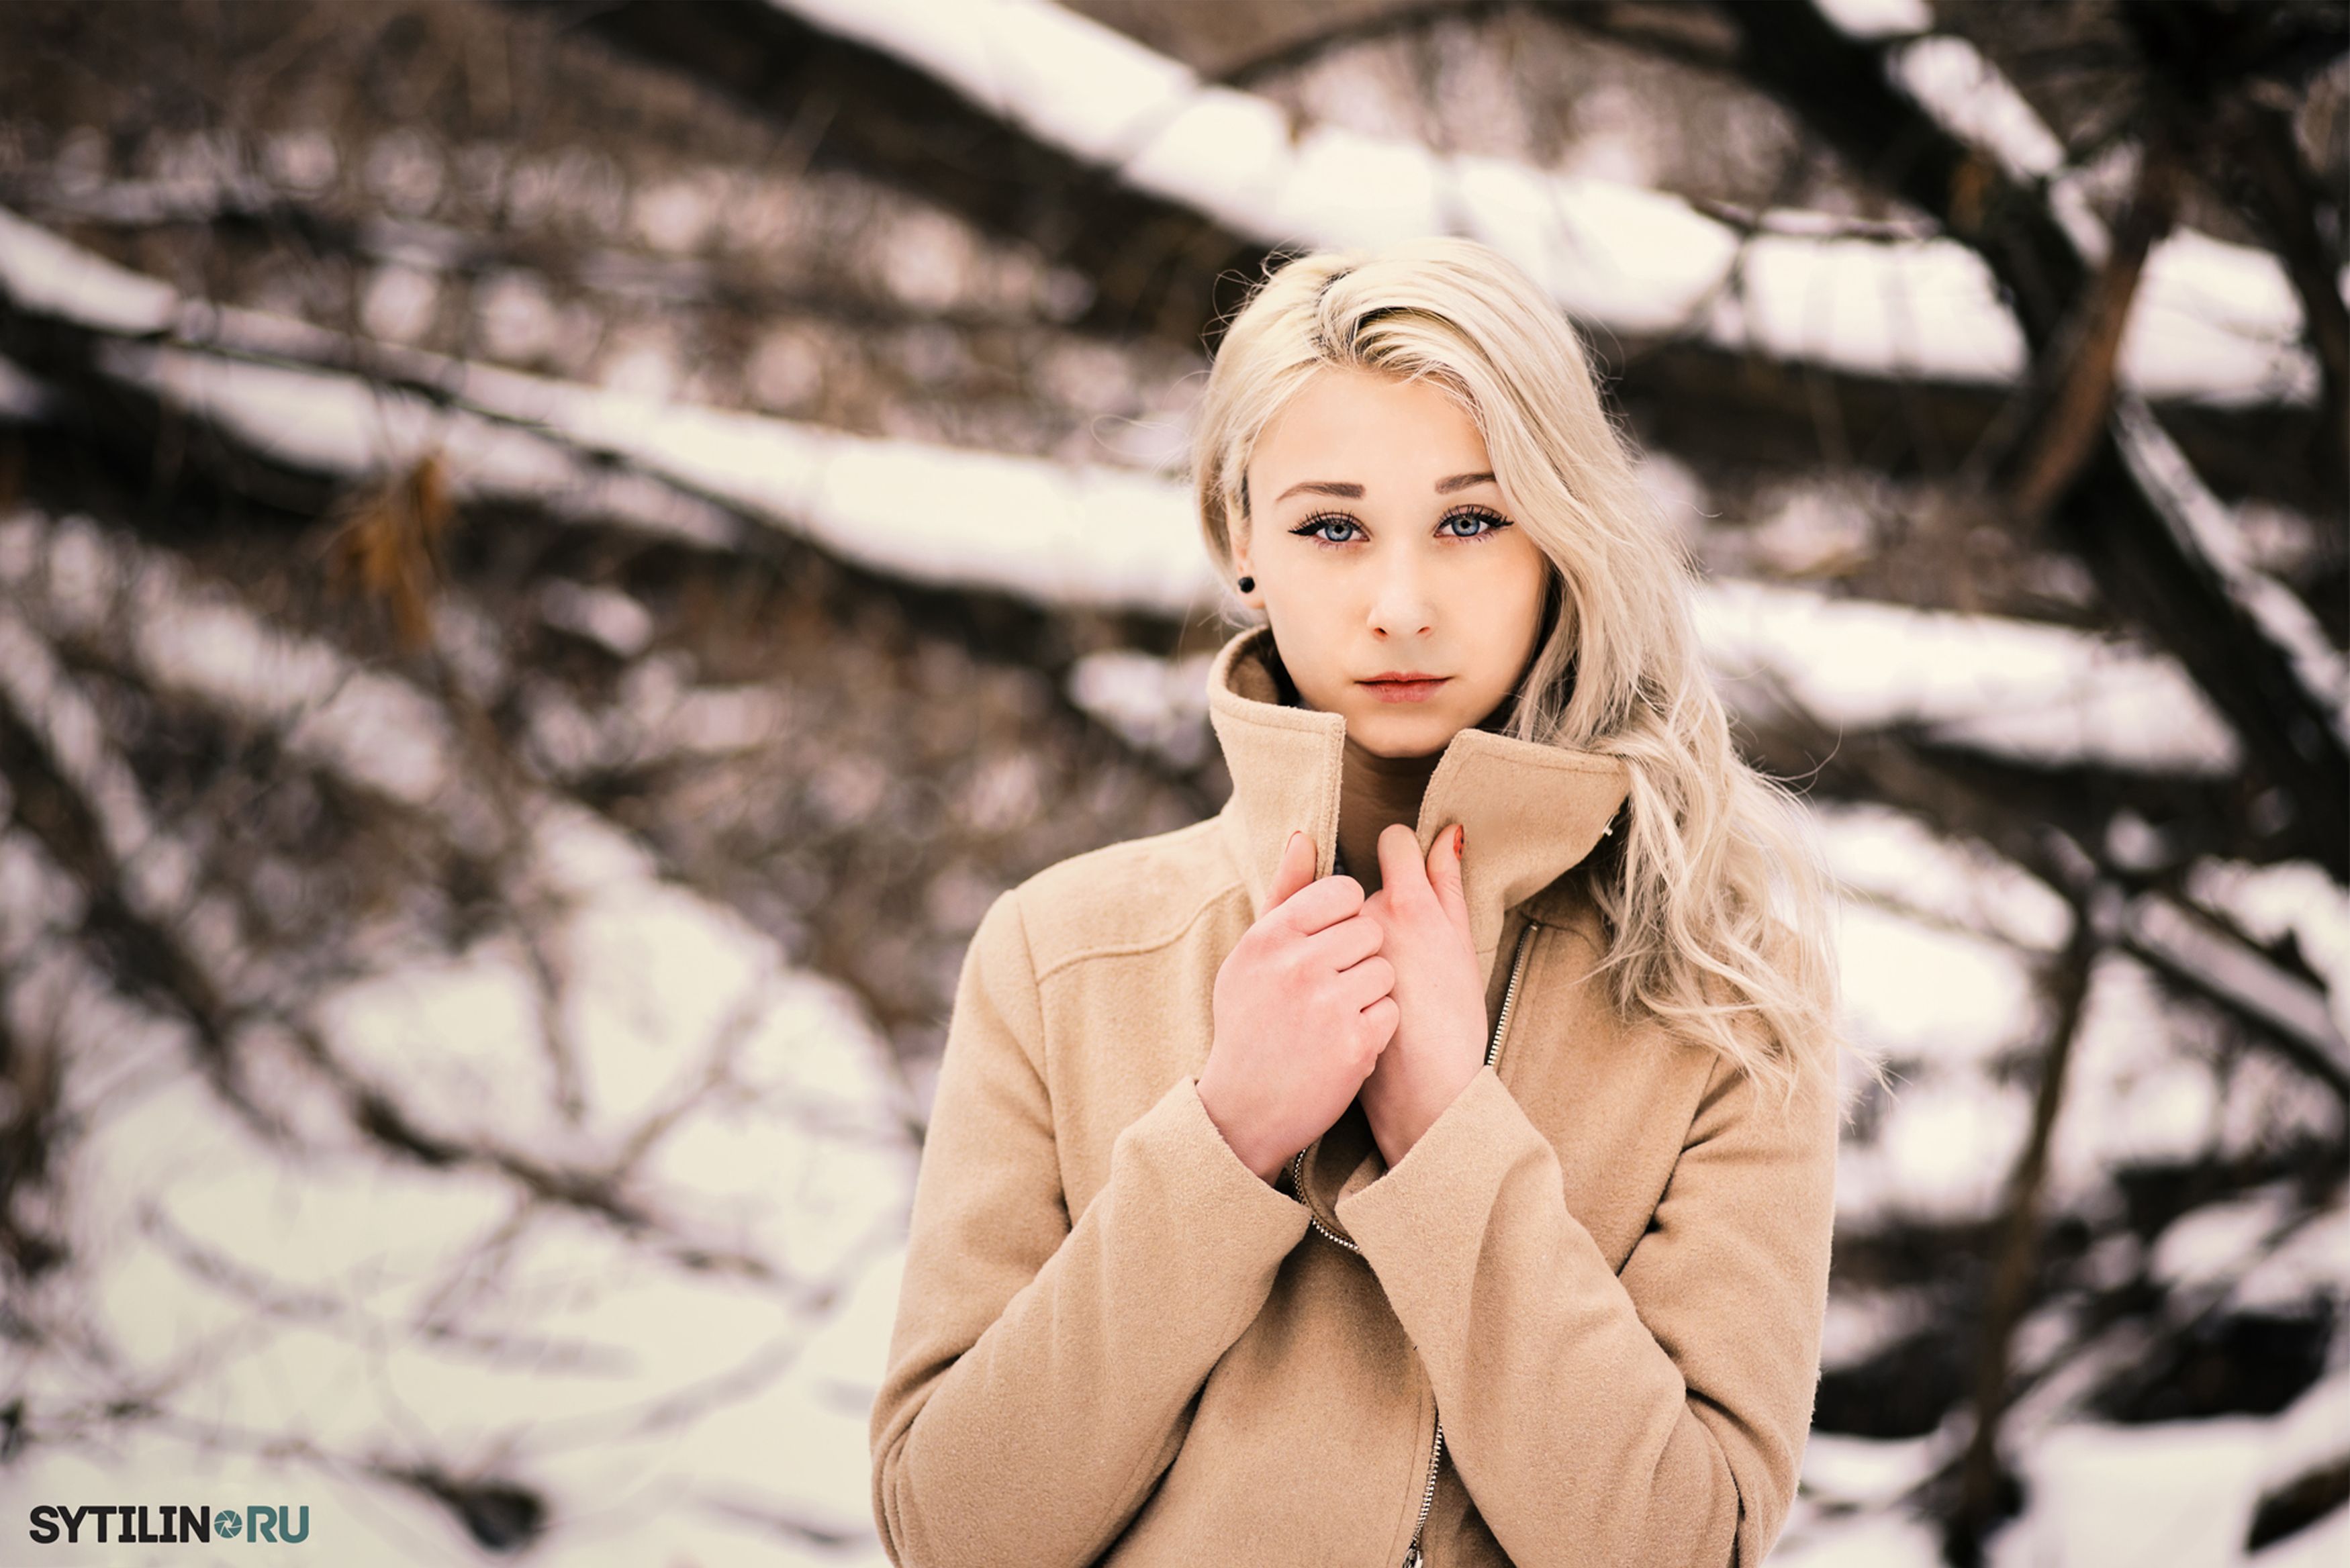 Стоковые фотографии по запросу Блондинка зима